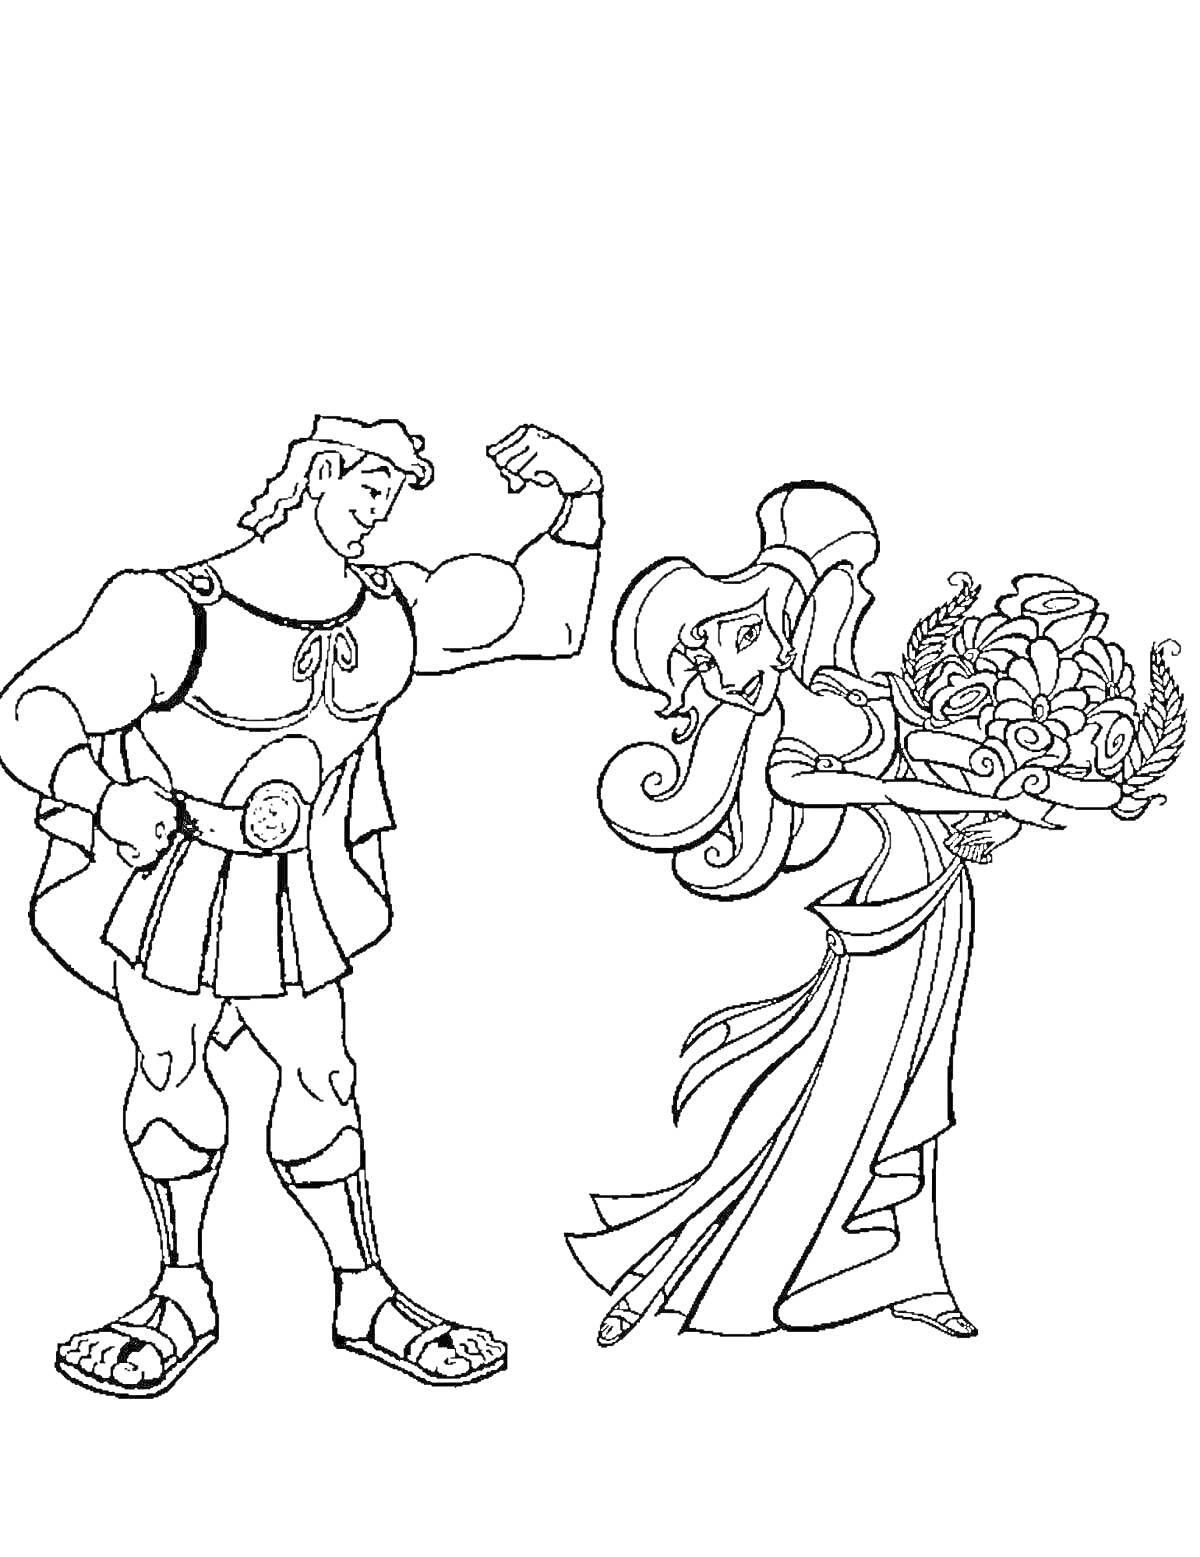 Геракл и женщина с корзиной фруктов